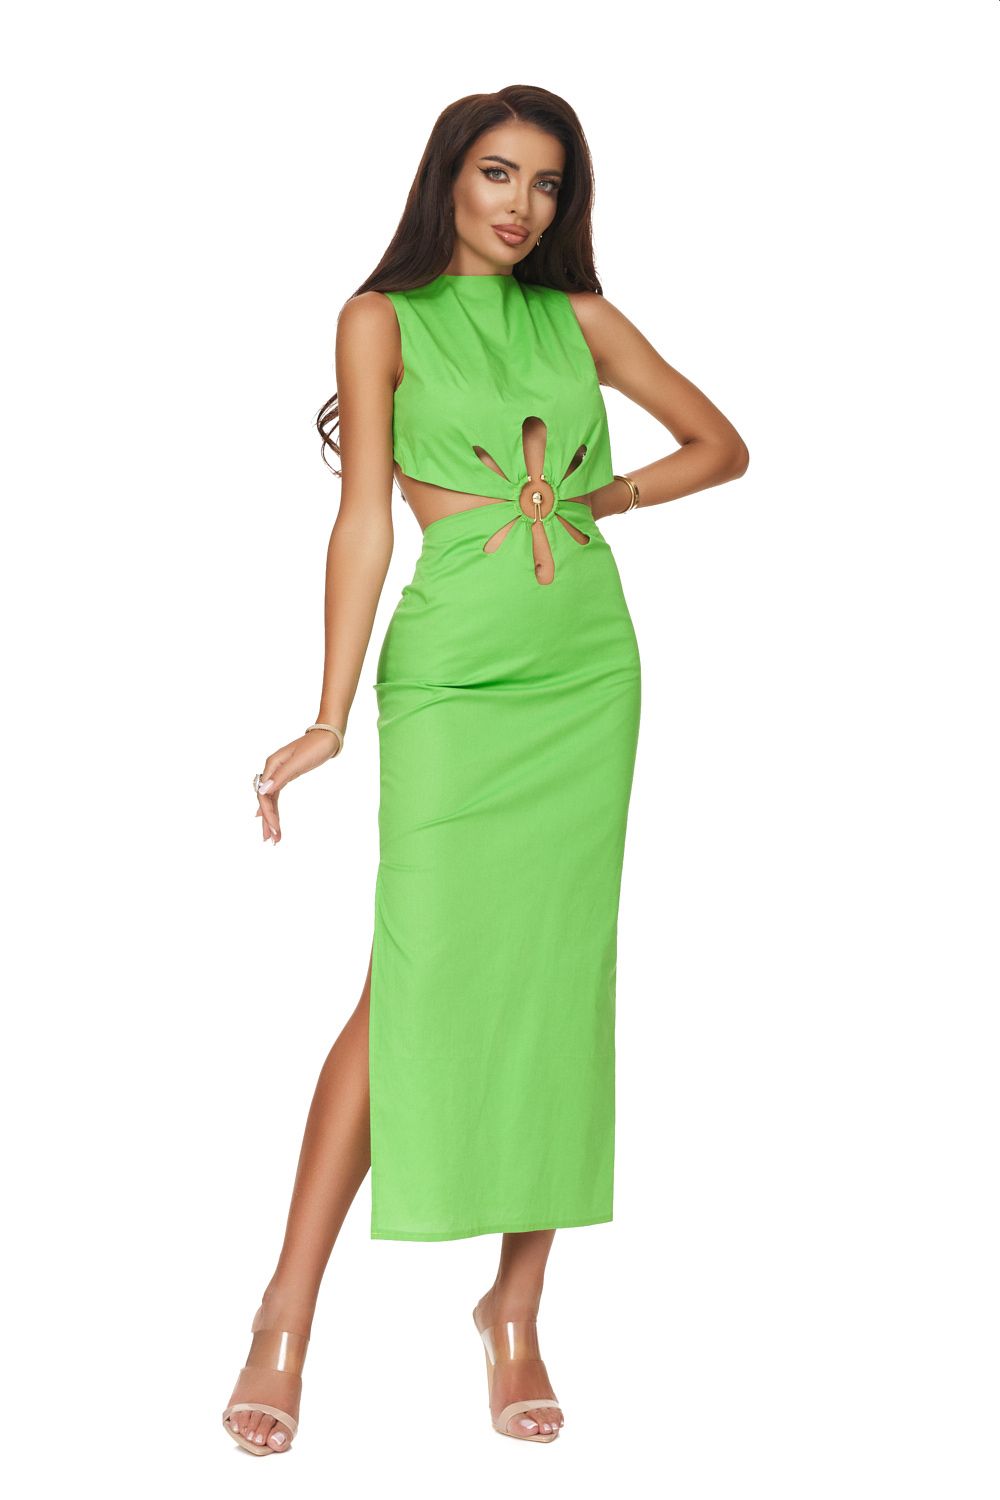 Long green dress for women Zalyza Bogas